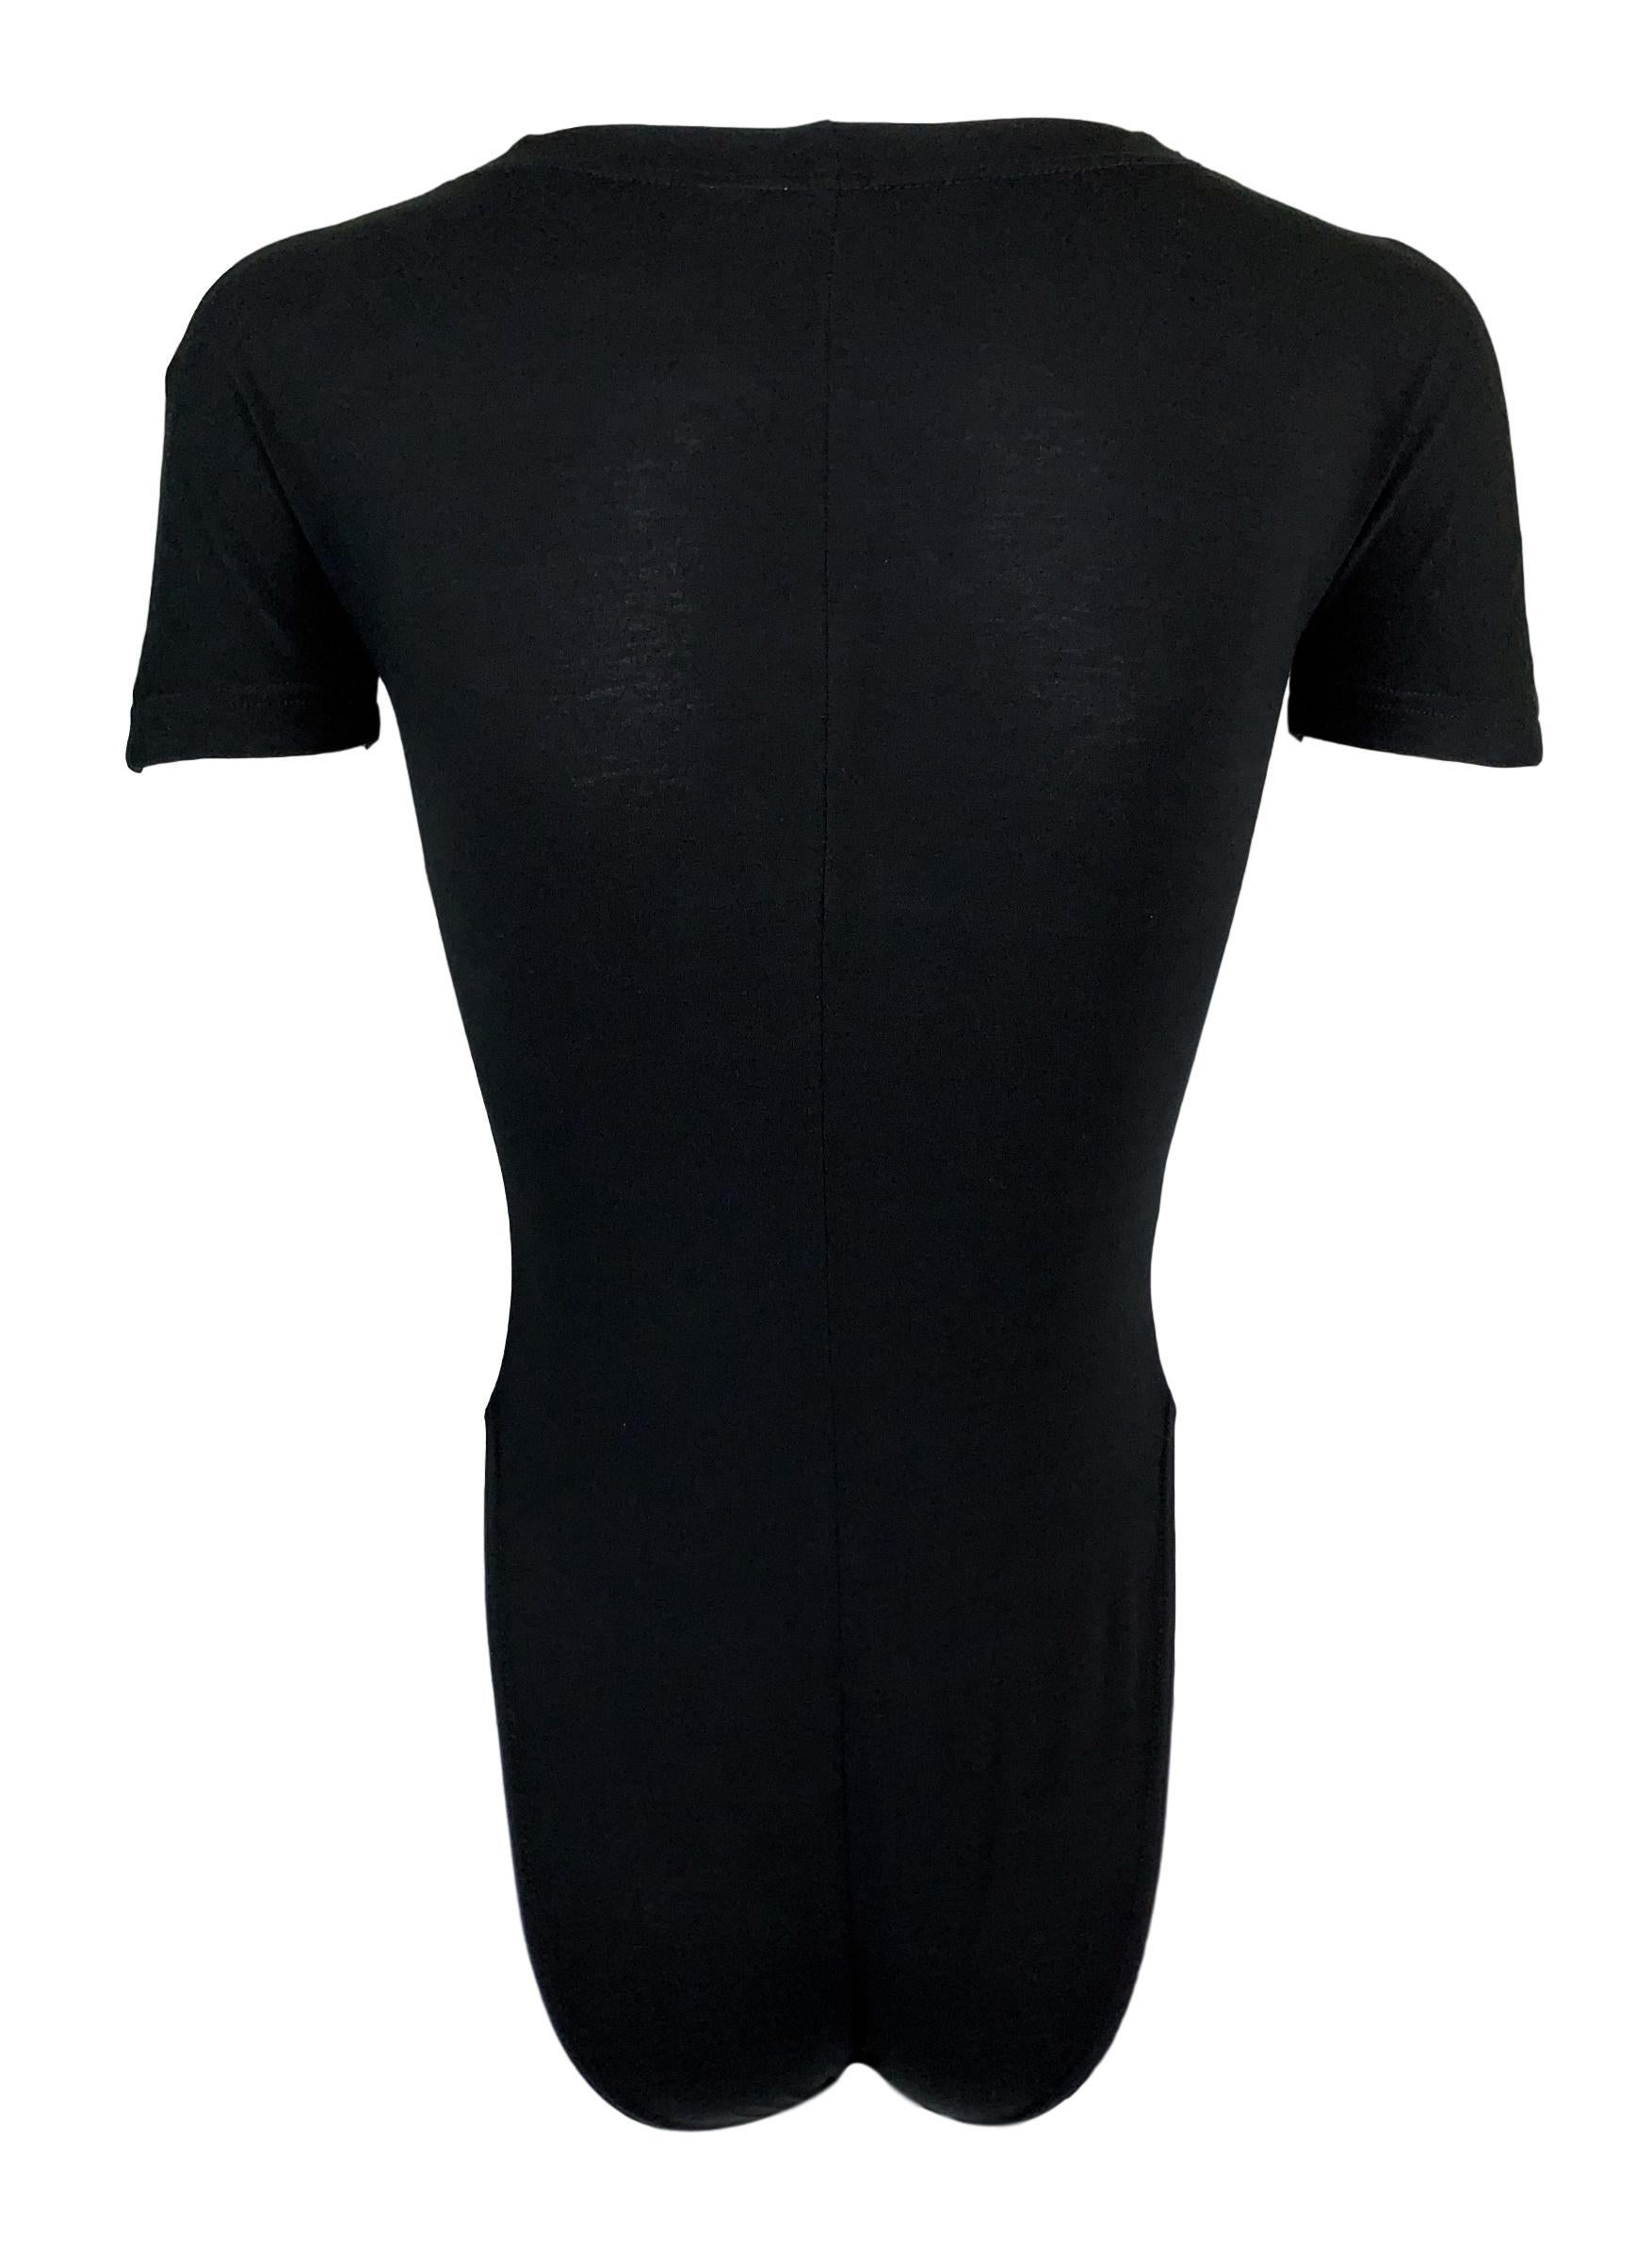 versace bodysuit black